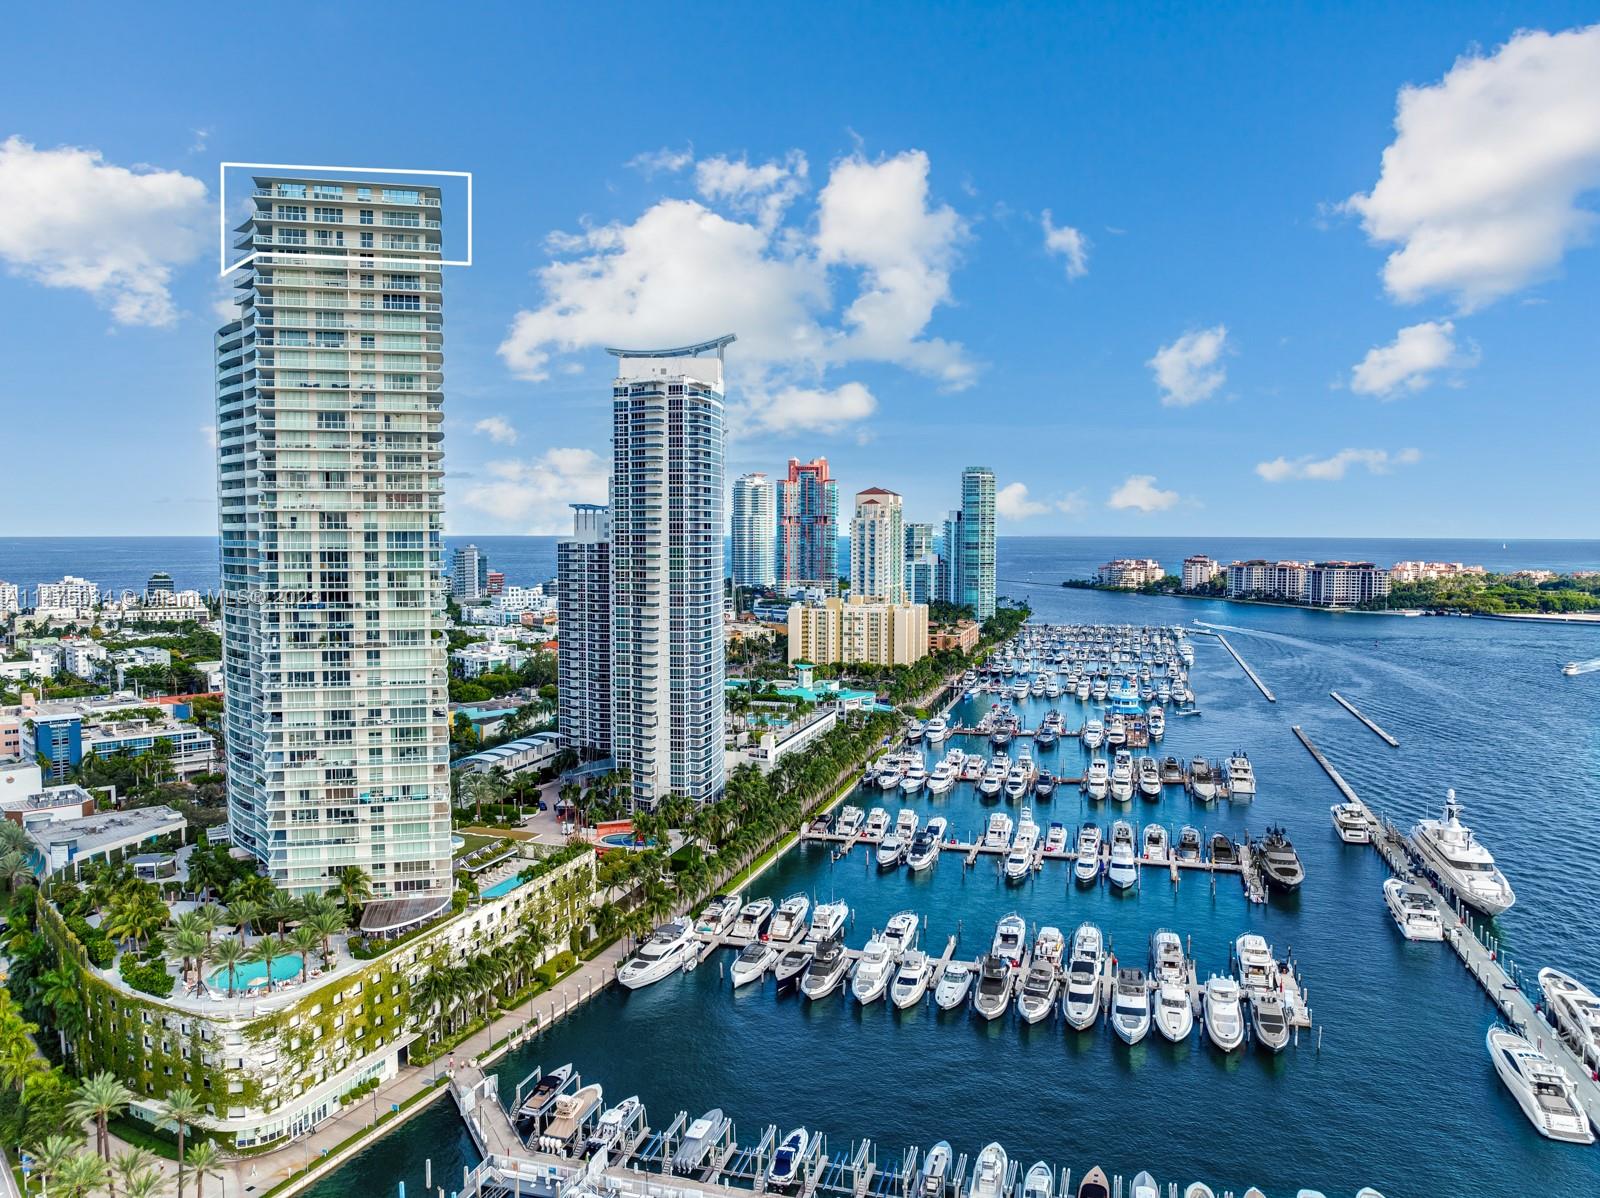 Property for Sale at 450 Alton Rd Rd Ph1, Miami Beach, Miami-Dade County, Florida - Bedrooms: 6 
Bathrooms: 8  - $47,500,000